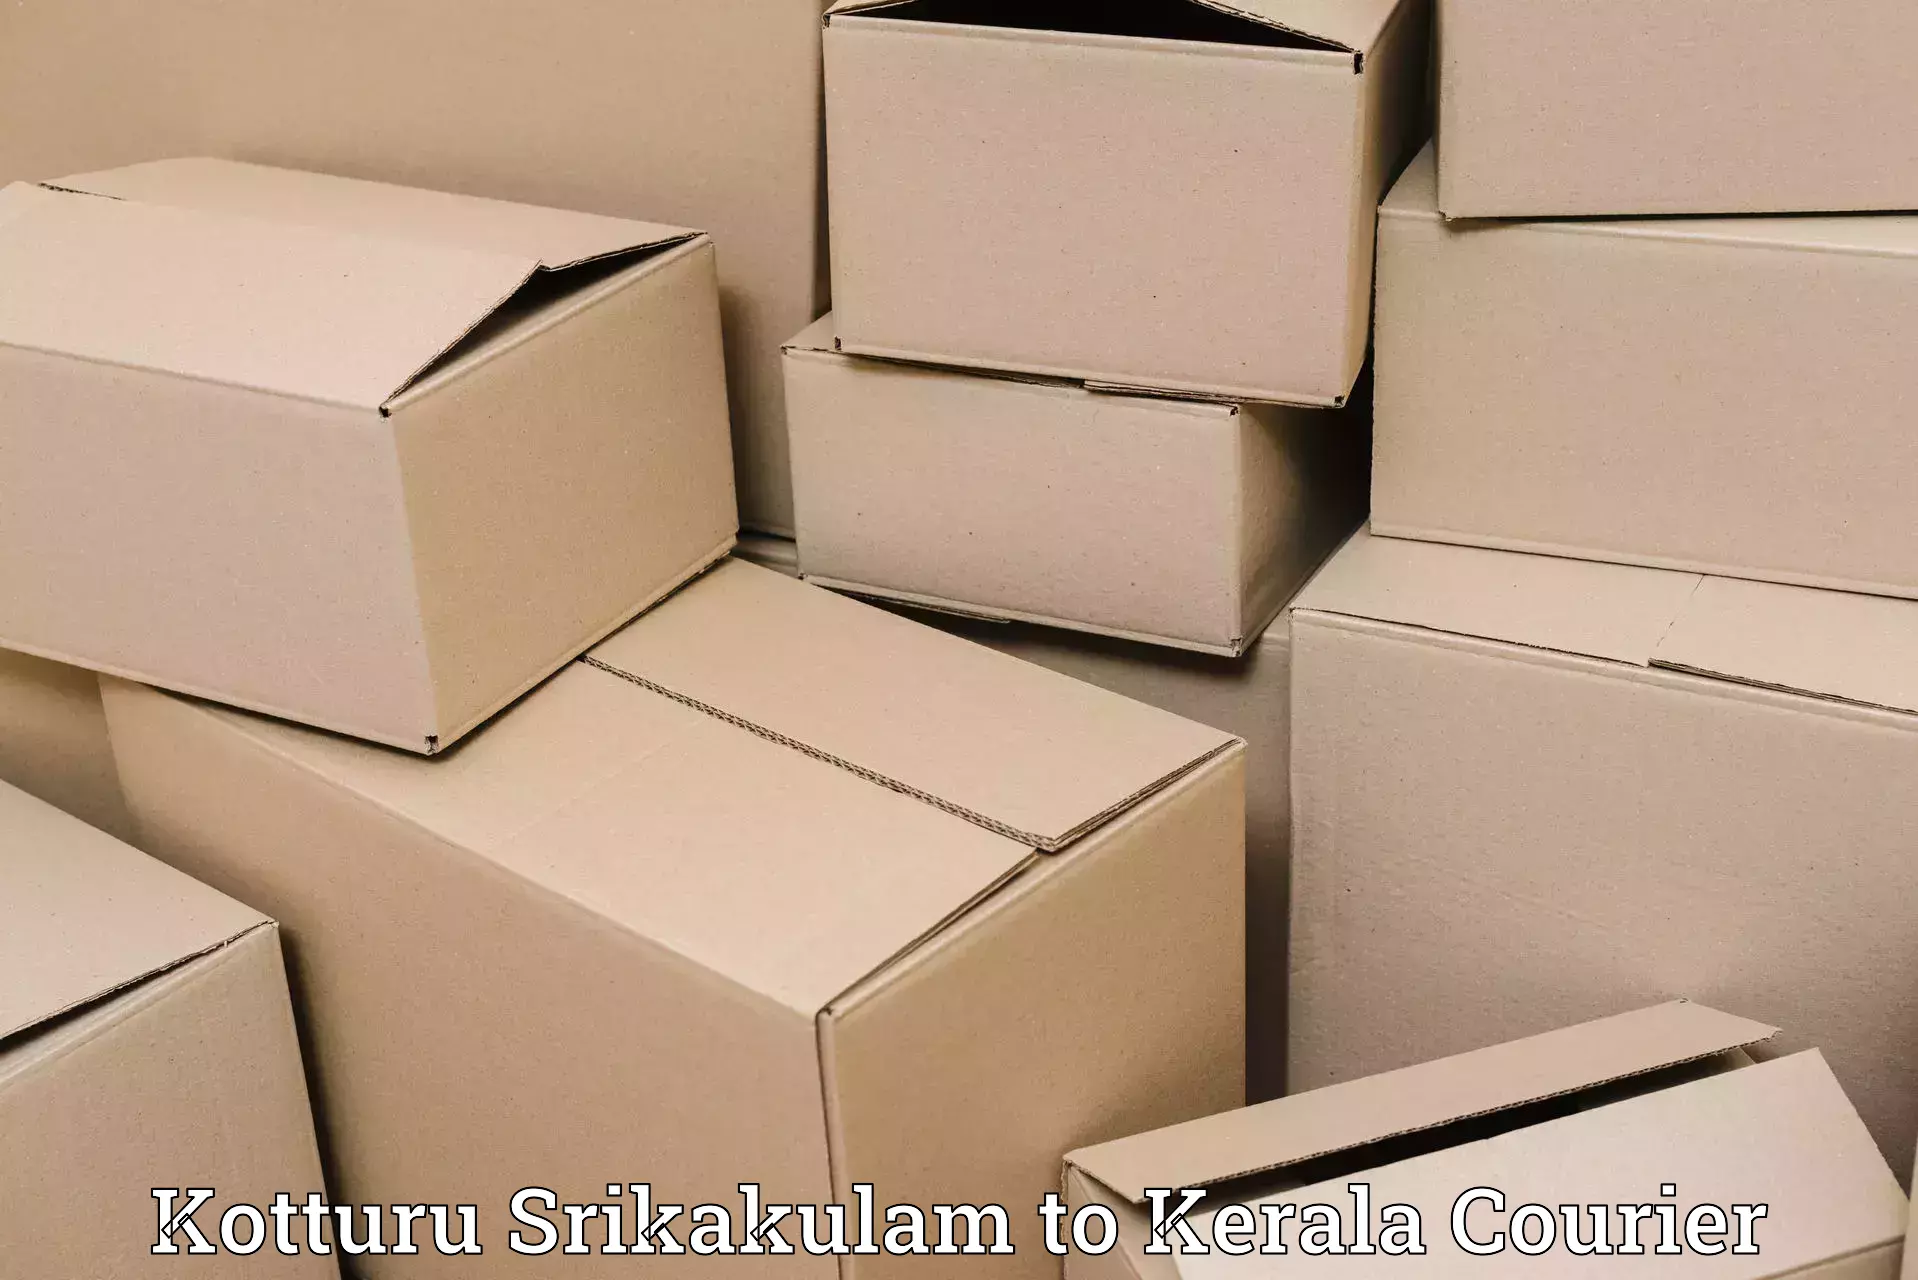 Automated parcel services Kotturu Srikakulam to Nedumangad